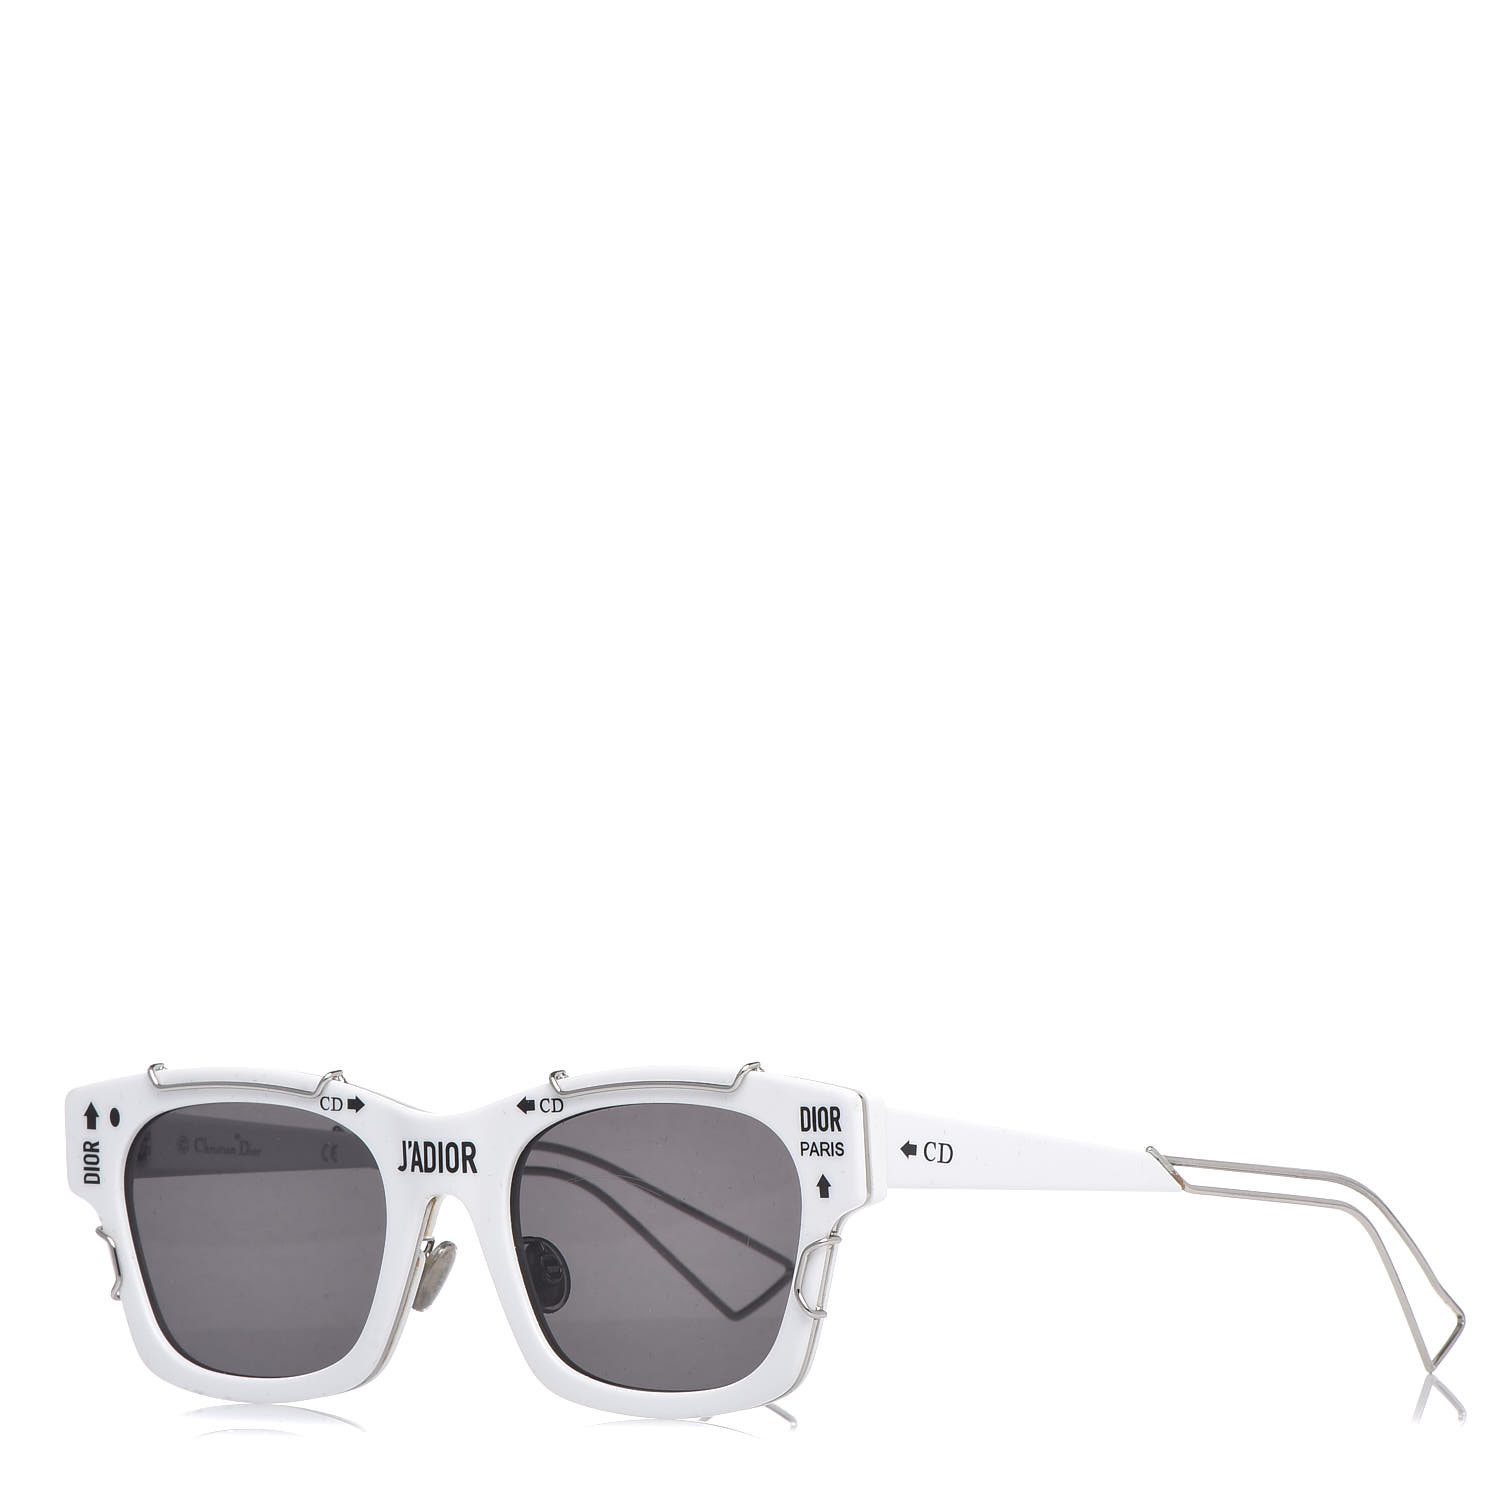 Dior Jadior Sunglasses in Black  Lyst